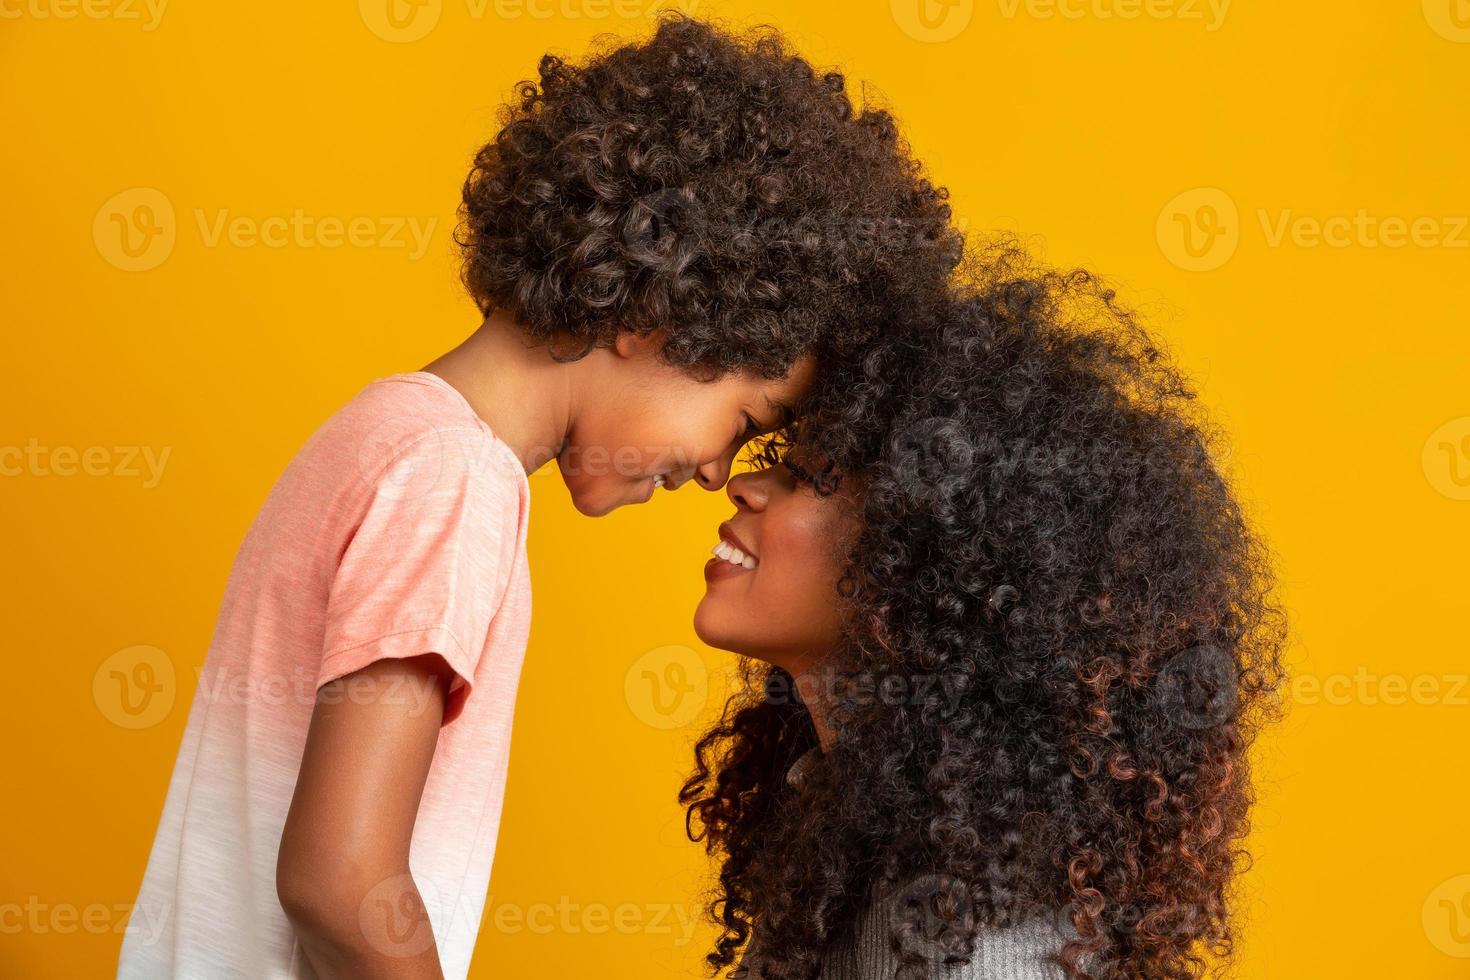 ritratto di giovane madre afroamericana con figlio bambino. sfondo giallo. famiglia brasiliana. foto